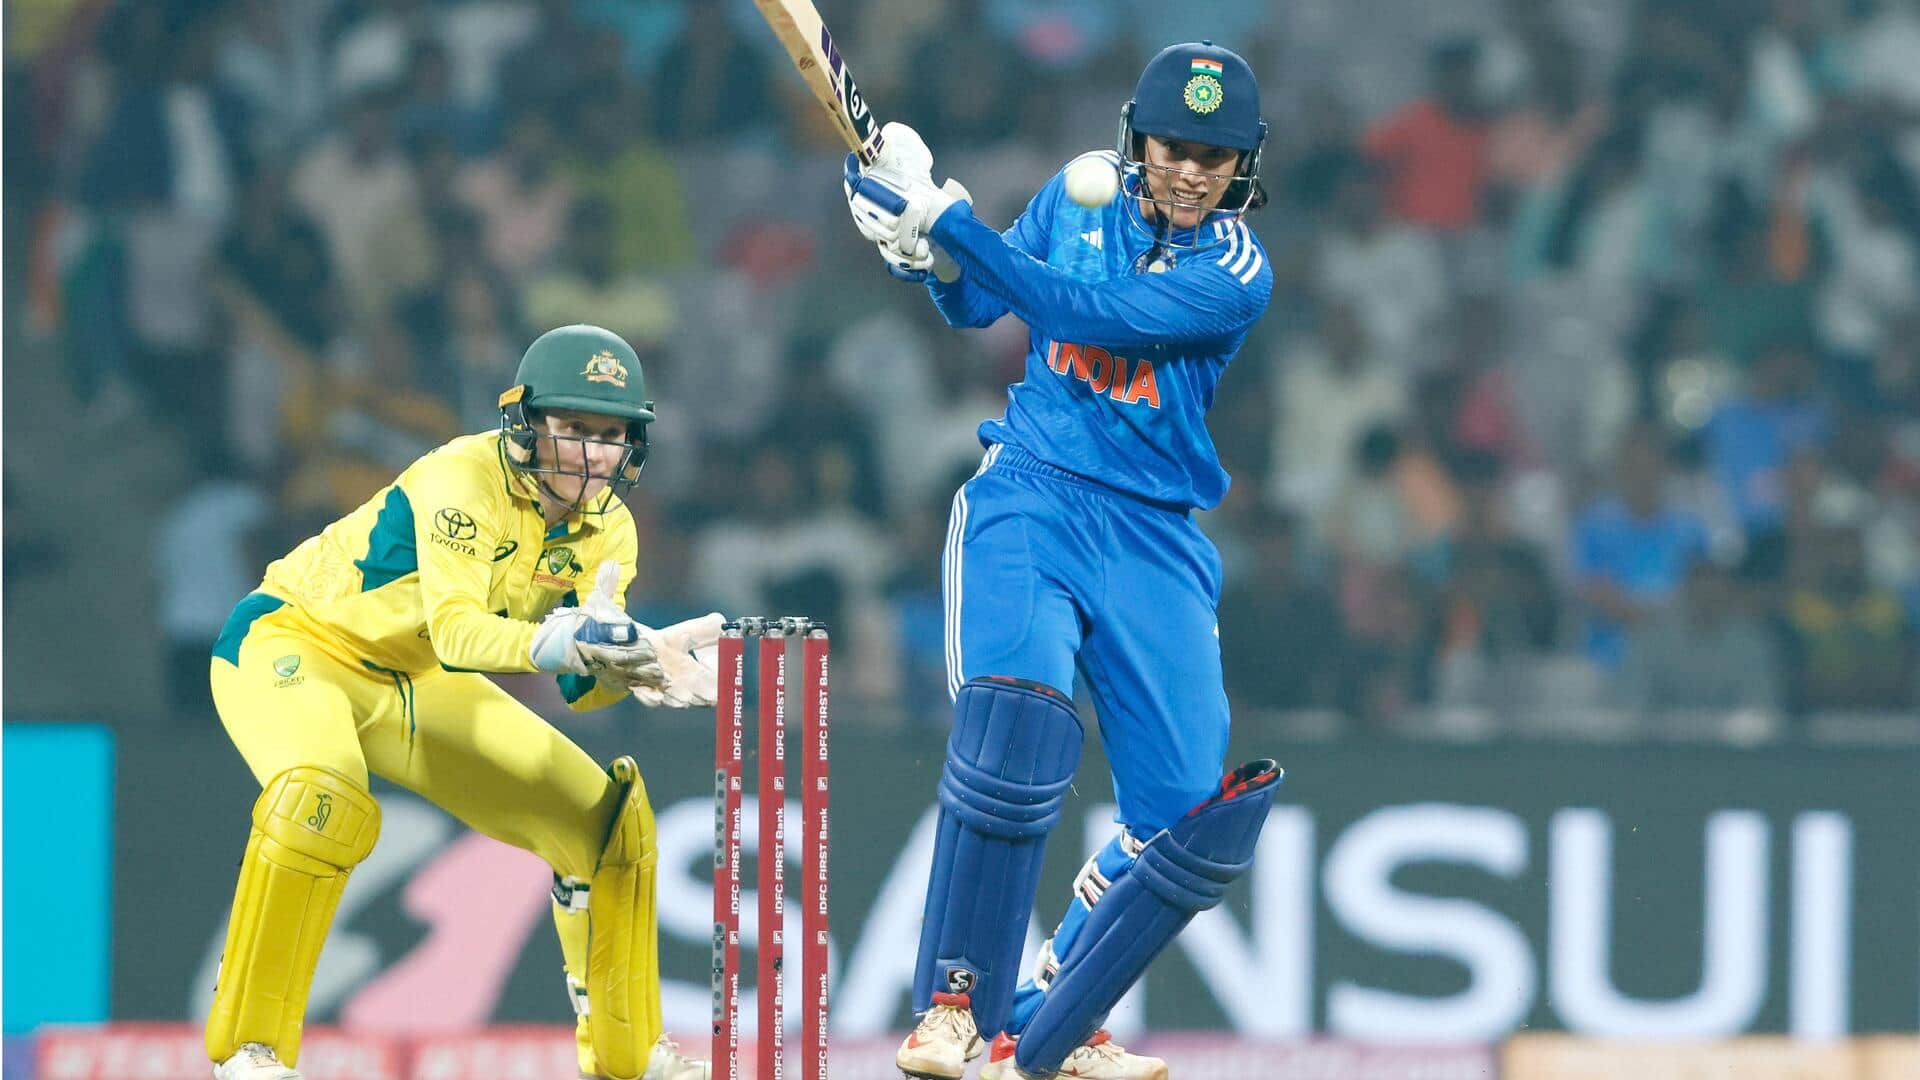 महिला क्रिकेट, भारत बनाम ऑस्ट्रेलिया: स्मृति मंधाना ने जड़ा 23वां टी-20 अंतरराष्ट्रीय अर्धशतक, जानिए आंकड़े